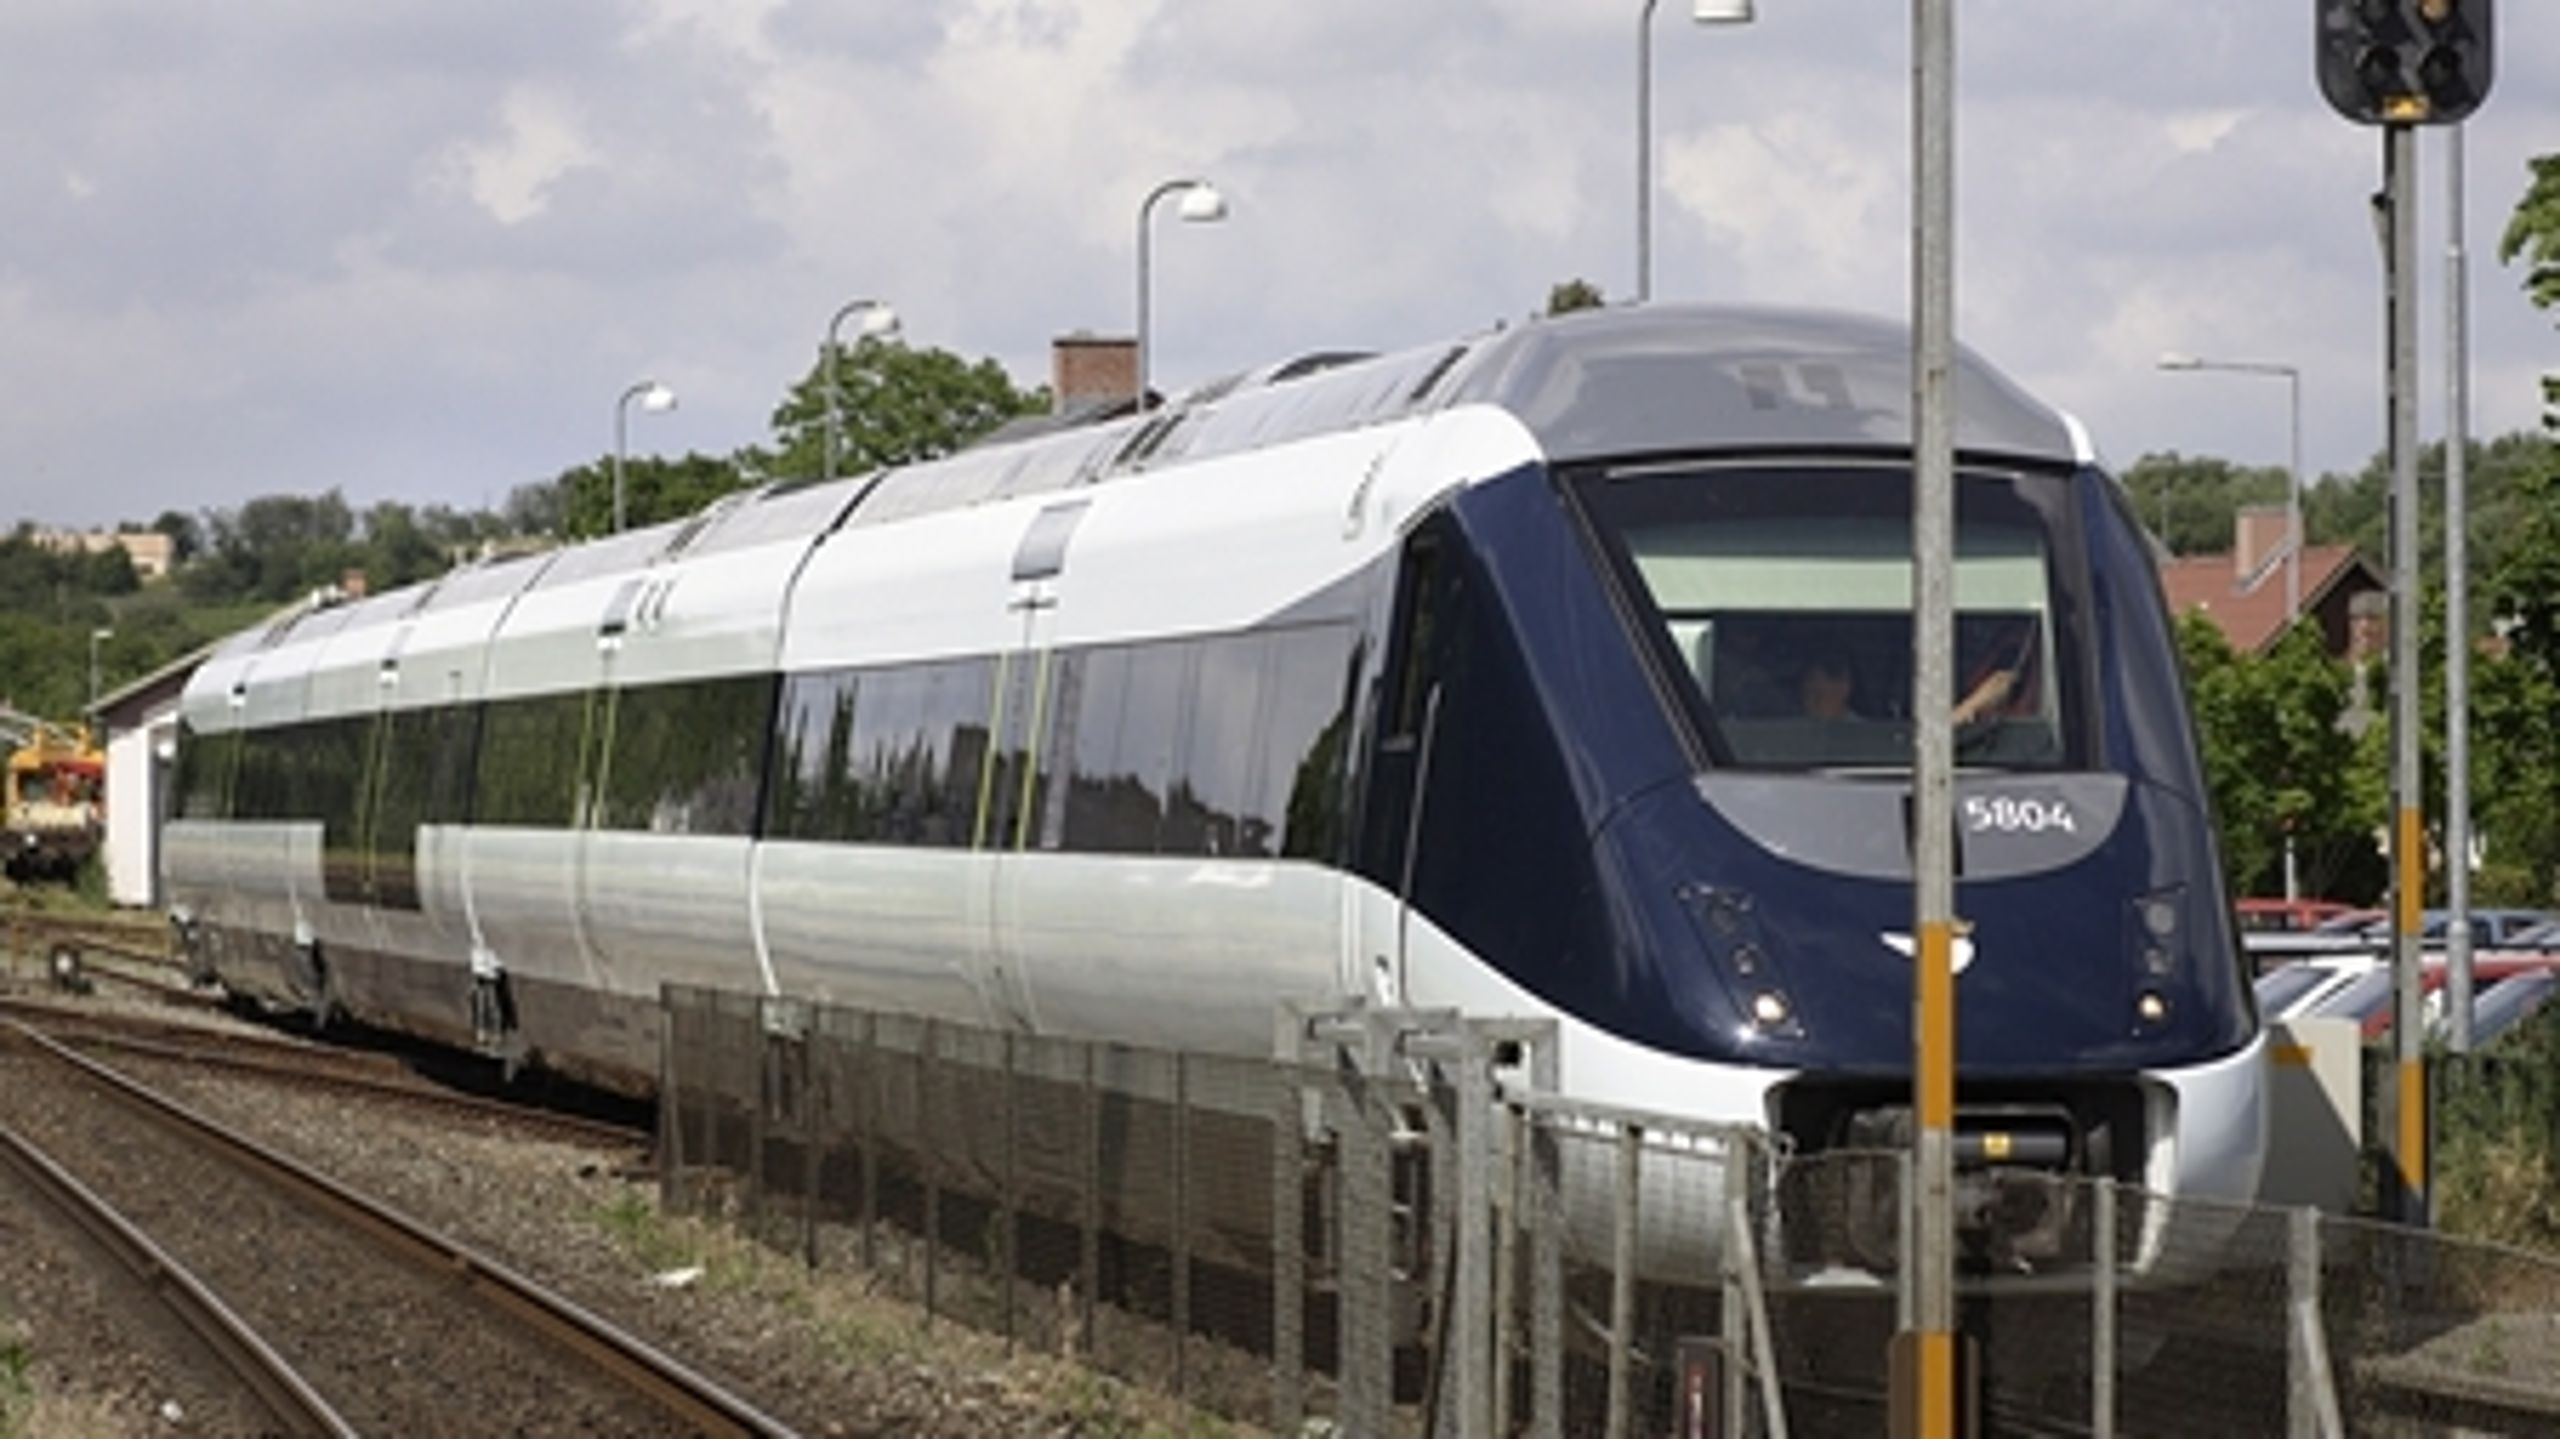 Det kan ikke komme som en overraskelse, at IC4-togene skal opgraderes til sammenkobling i Italien. Det siger Lars Barfoed